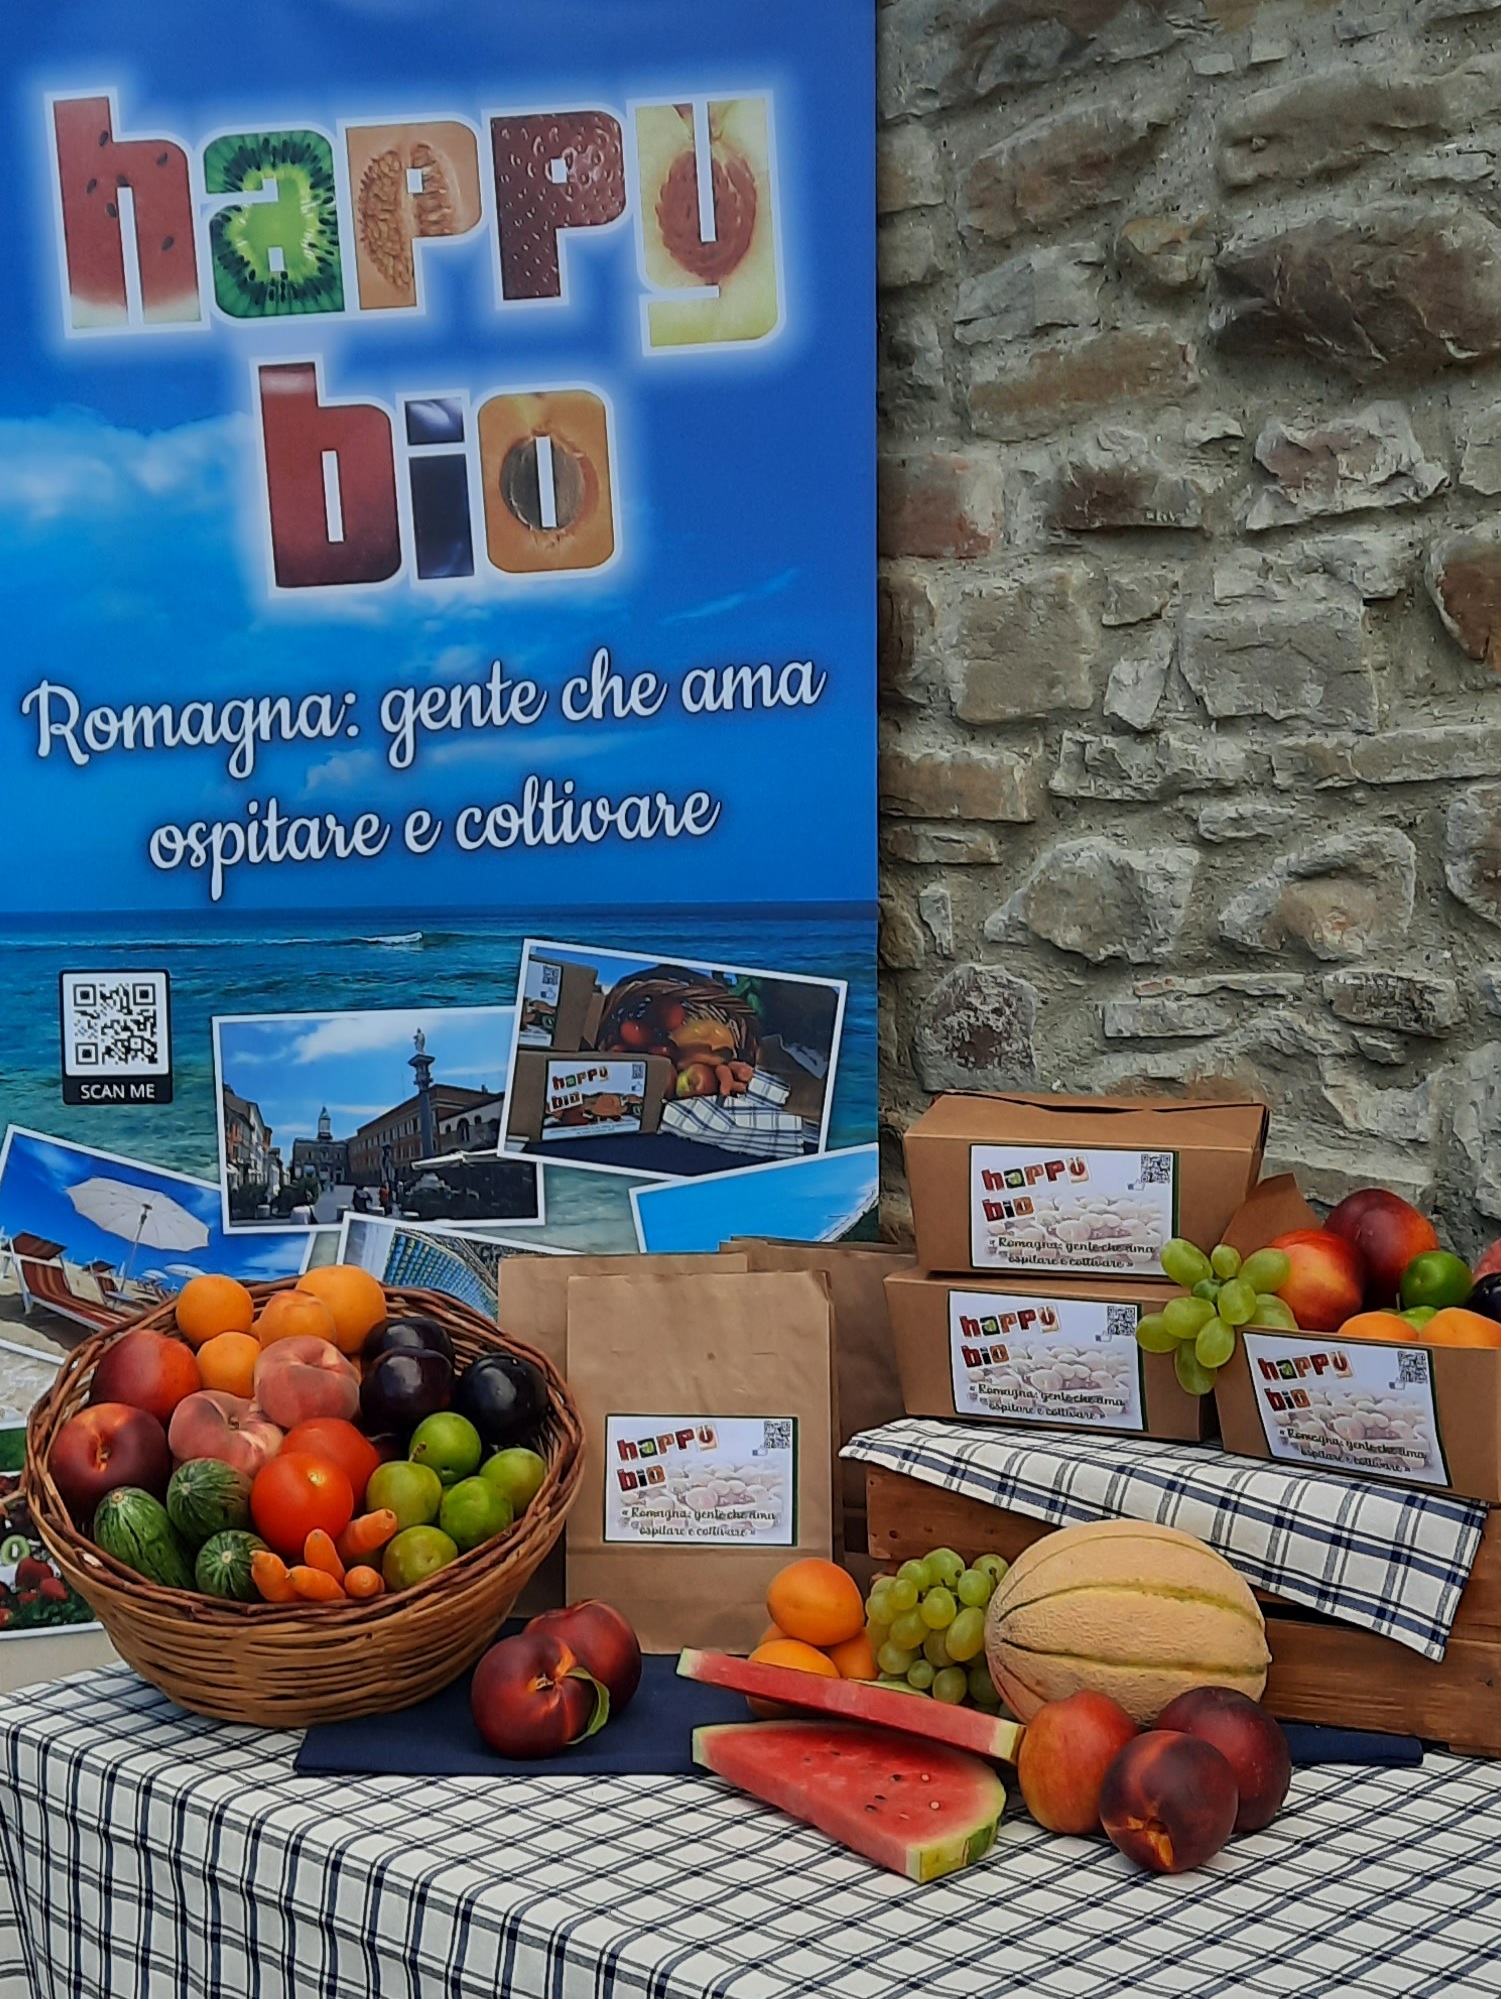 Romagna: gente che ama ospitare e coltivare” con gli eventi HAPPY BIO dell' estate 2022